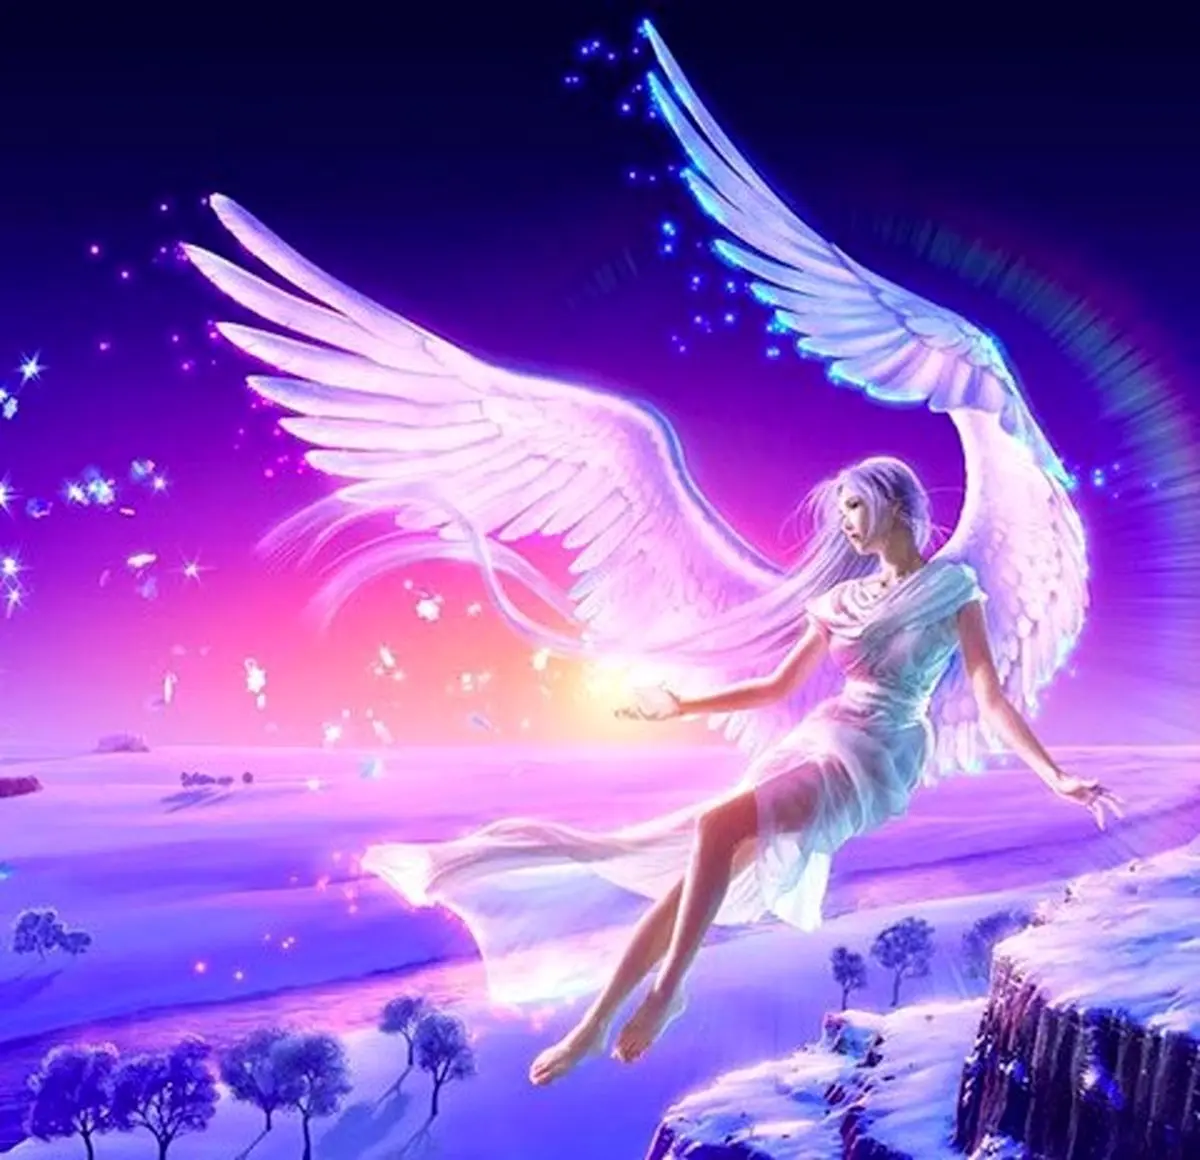 فال فرشتگان 20 شهریورماه  | فرشتگان برای شما چه پیام مثبتی دارند؟